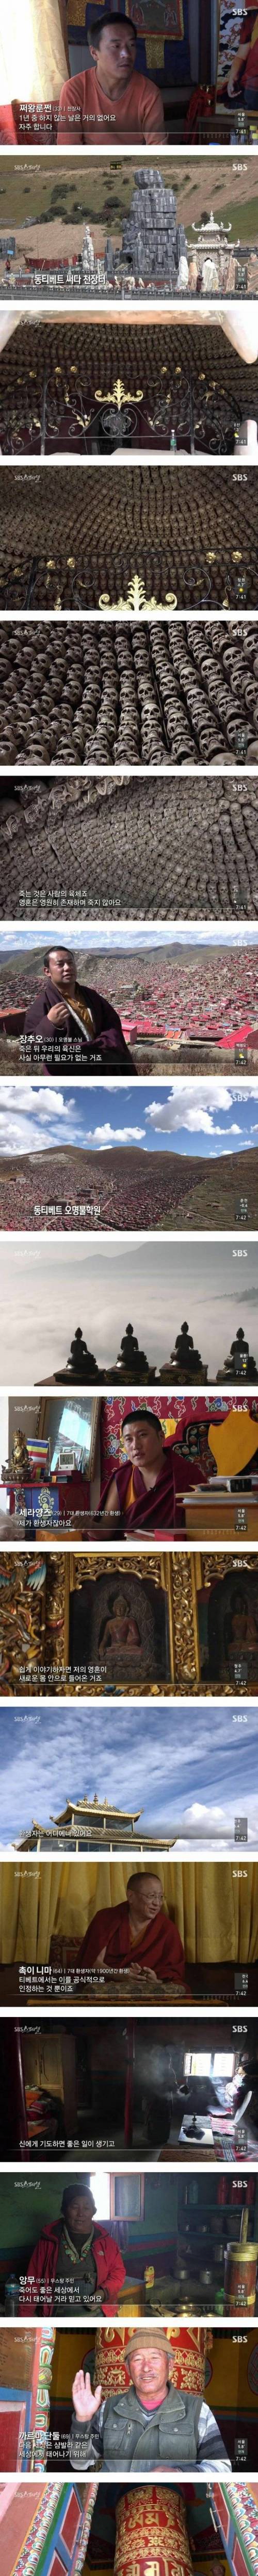 [스압] 티벳 장례문화.jpg